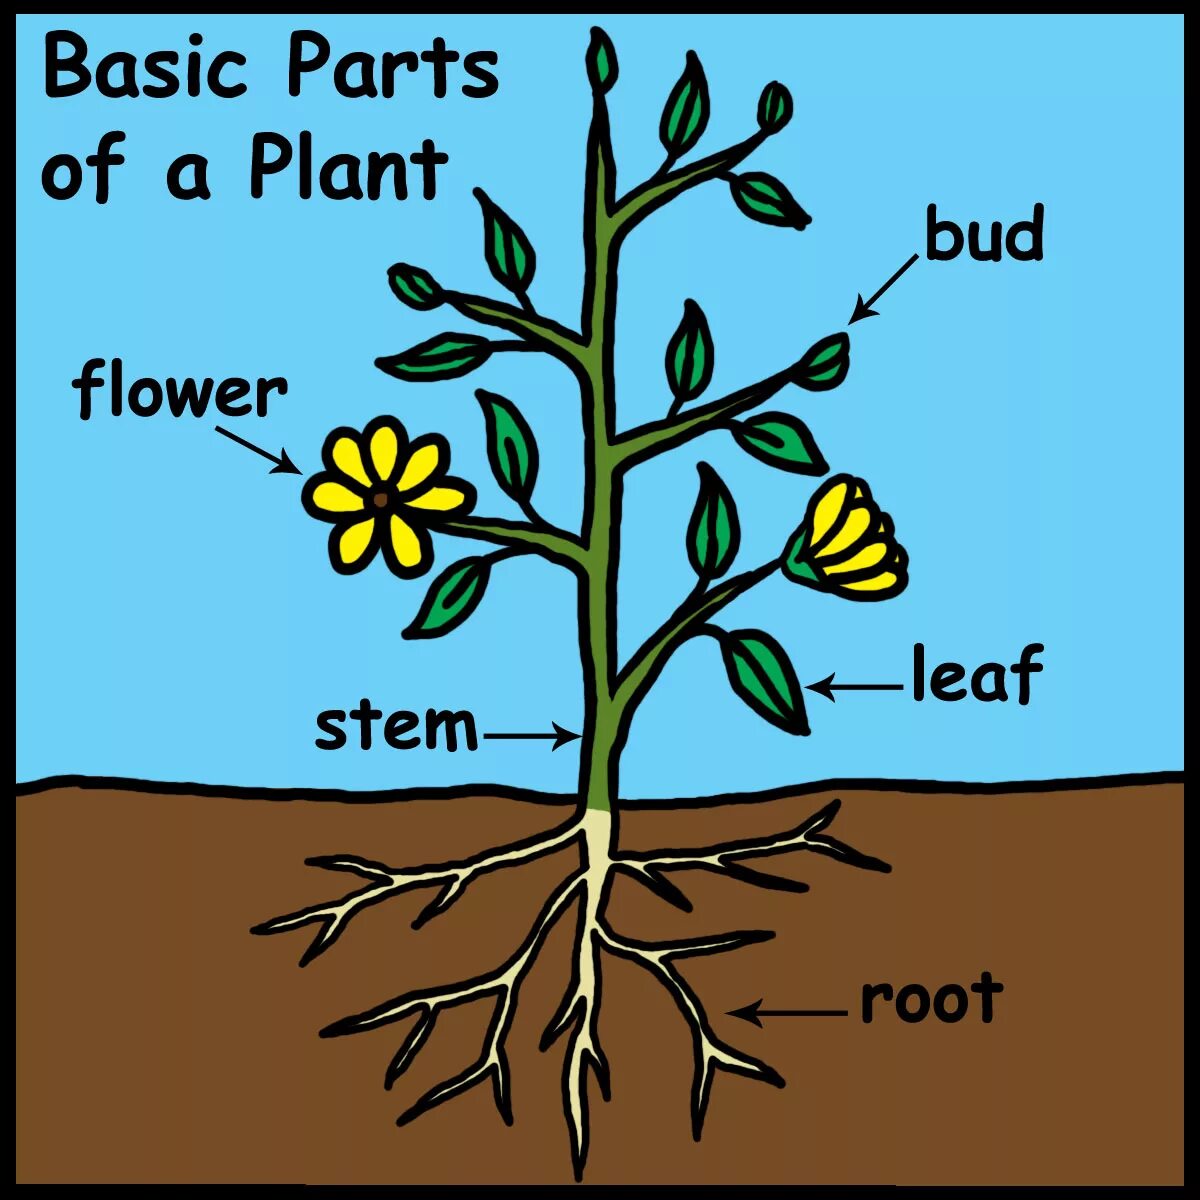 Plants task. Части растения. Parts of a Plant. Parts of Plants for Kids. Parts of a Plant цветок.